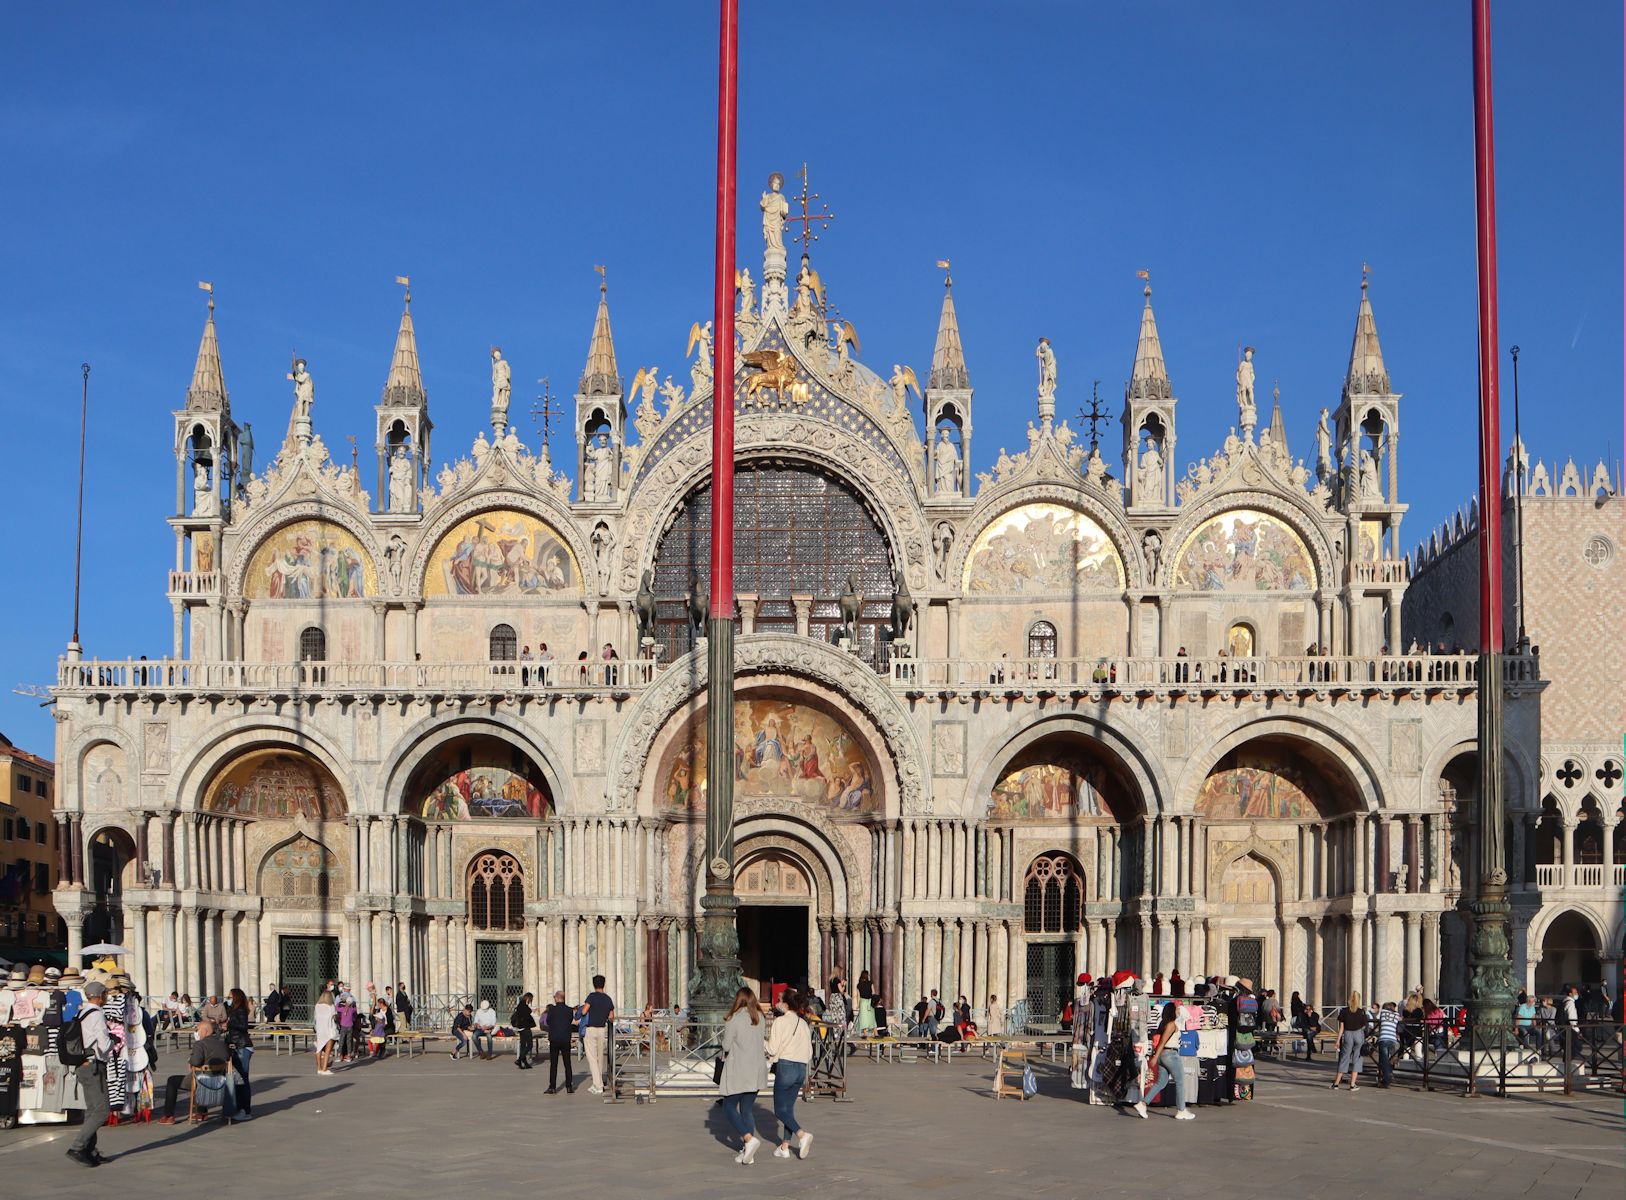 Markusdom in Venedig, seit 1807 - nach dem Ende der Republik Venedig - Sitz des Patriarchen